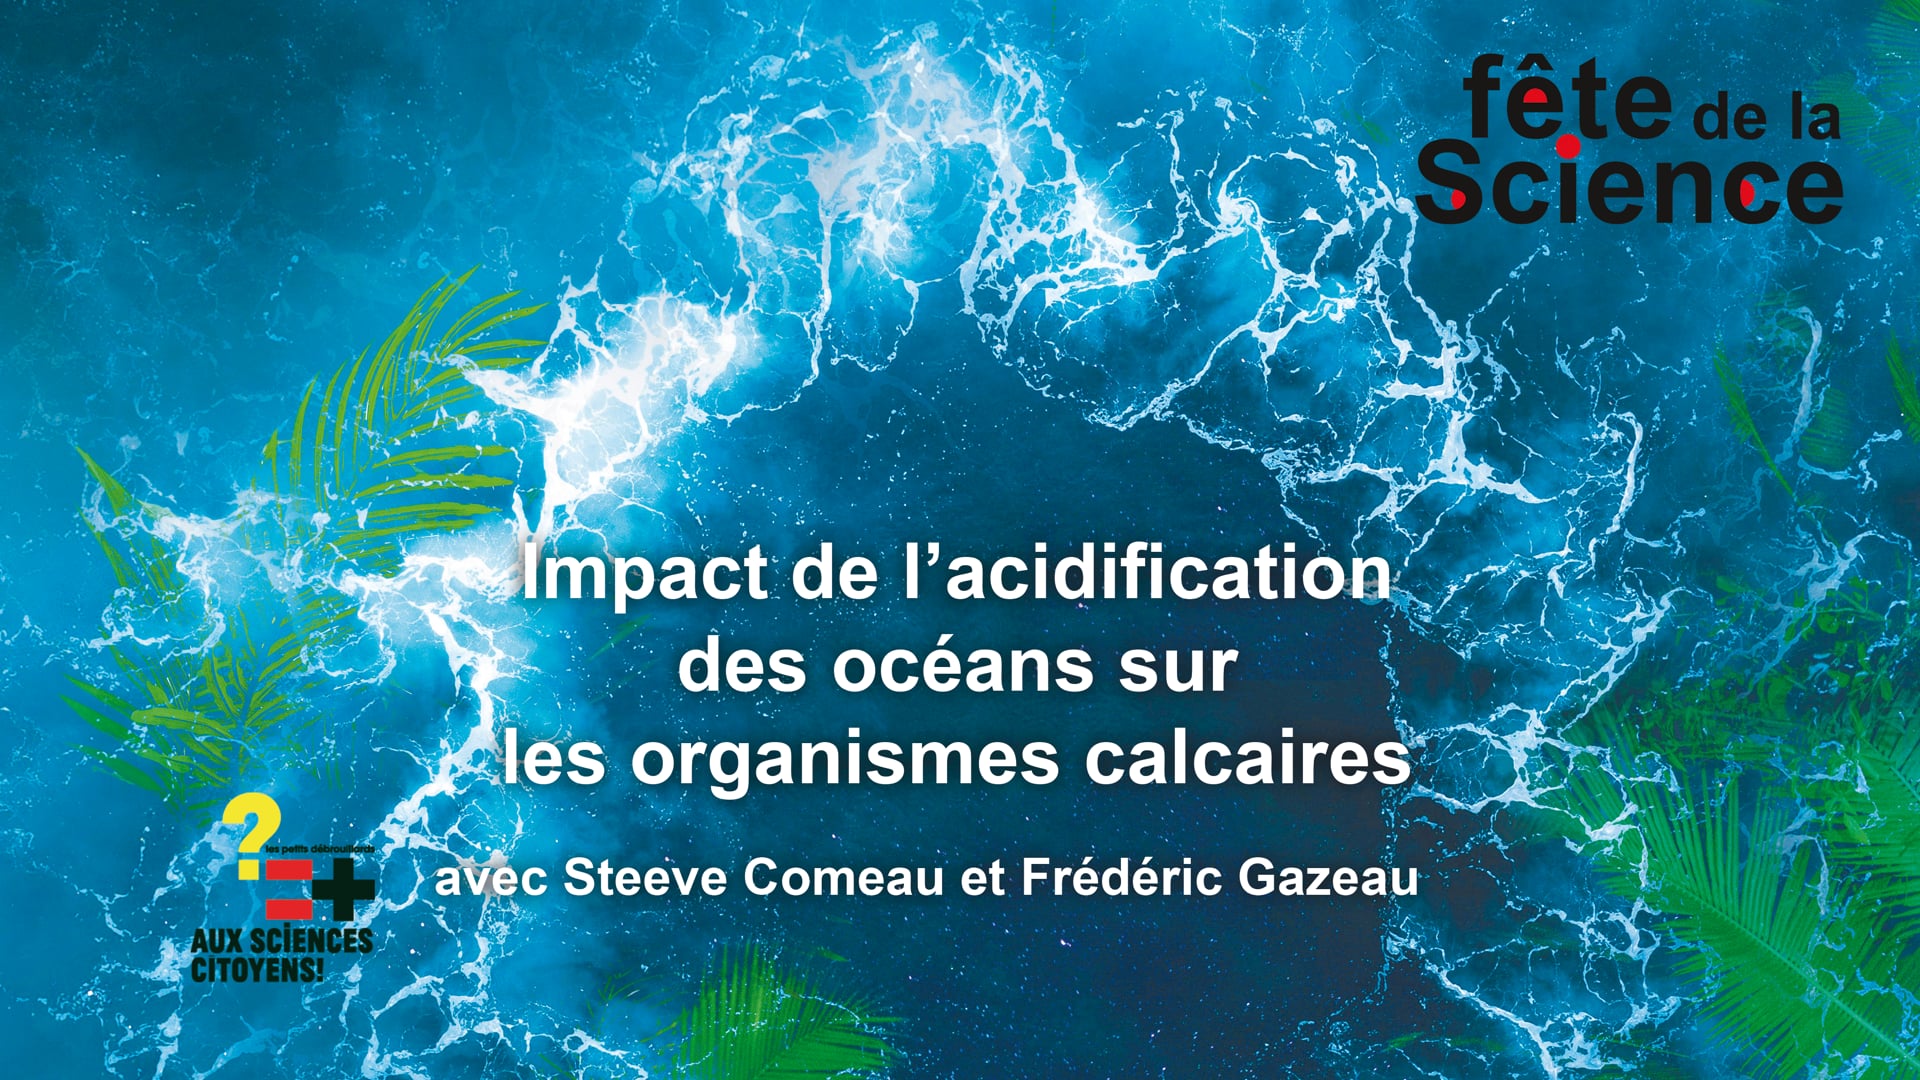 Impact de l’acidification des océans sur les organismes calcaires - avec Steeve Comeau et Frédéric Gazeau - Live